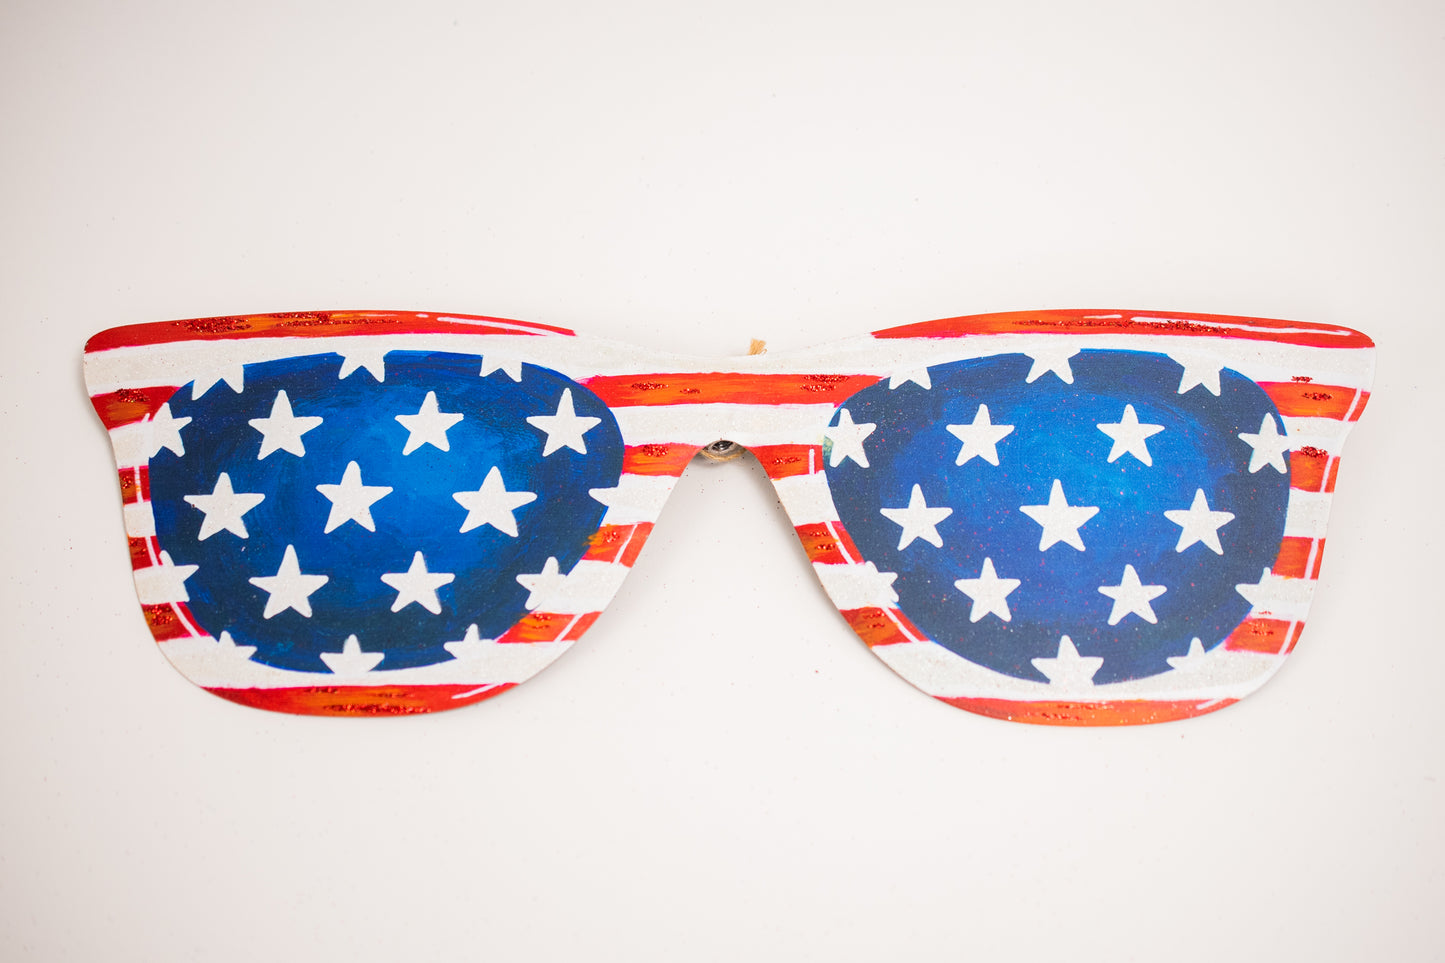 Patriotic Sunglasses, Set of 3